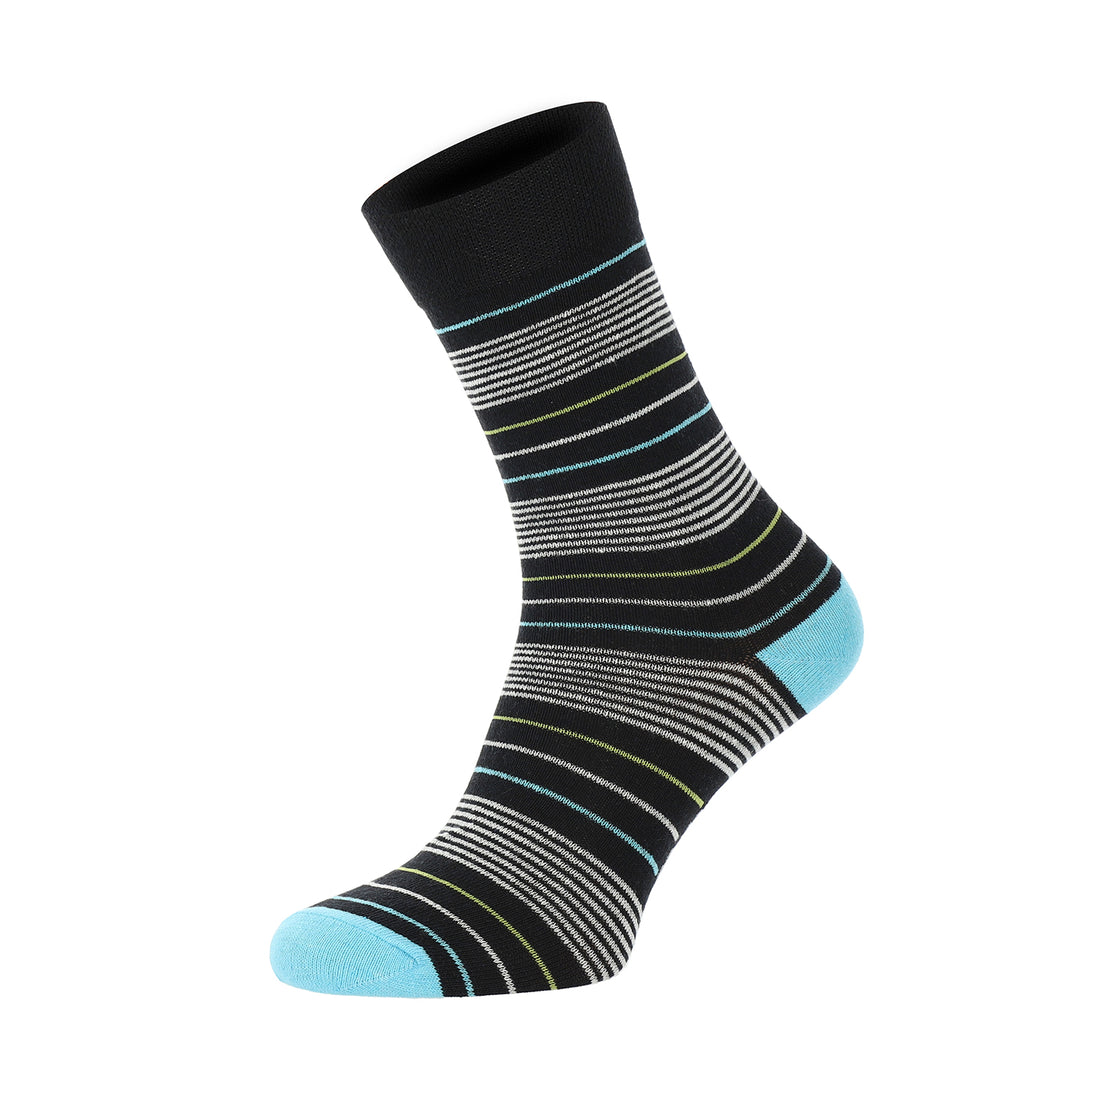 ChiliLifestyle Socken Streifen Design, 5 Paar, für Damen, Baumwolle